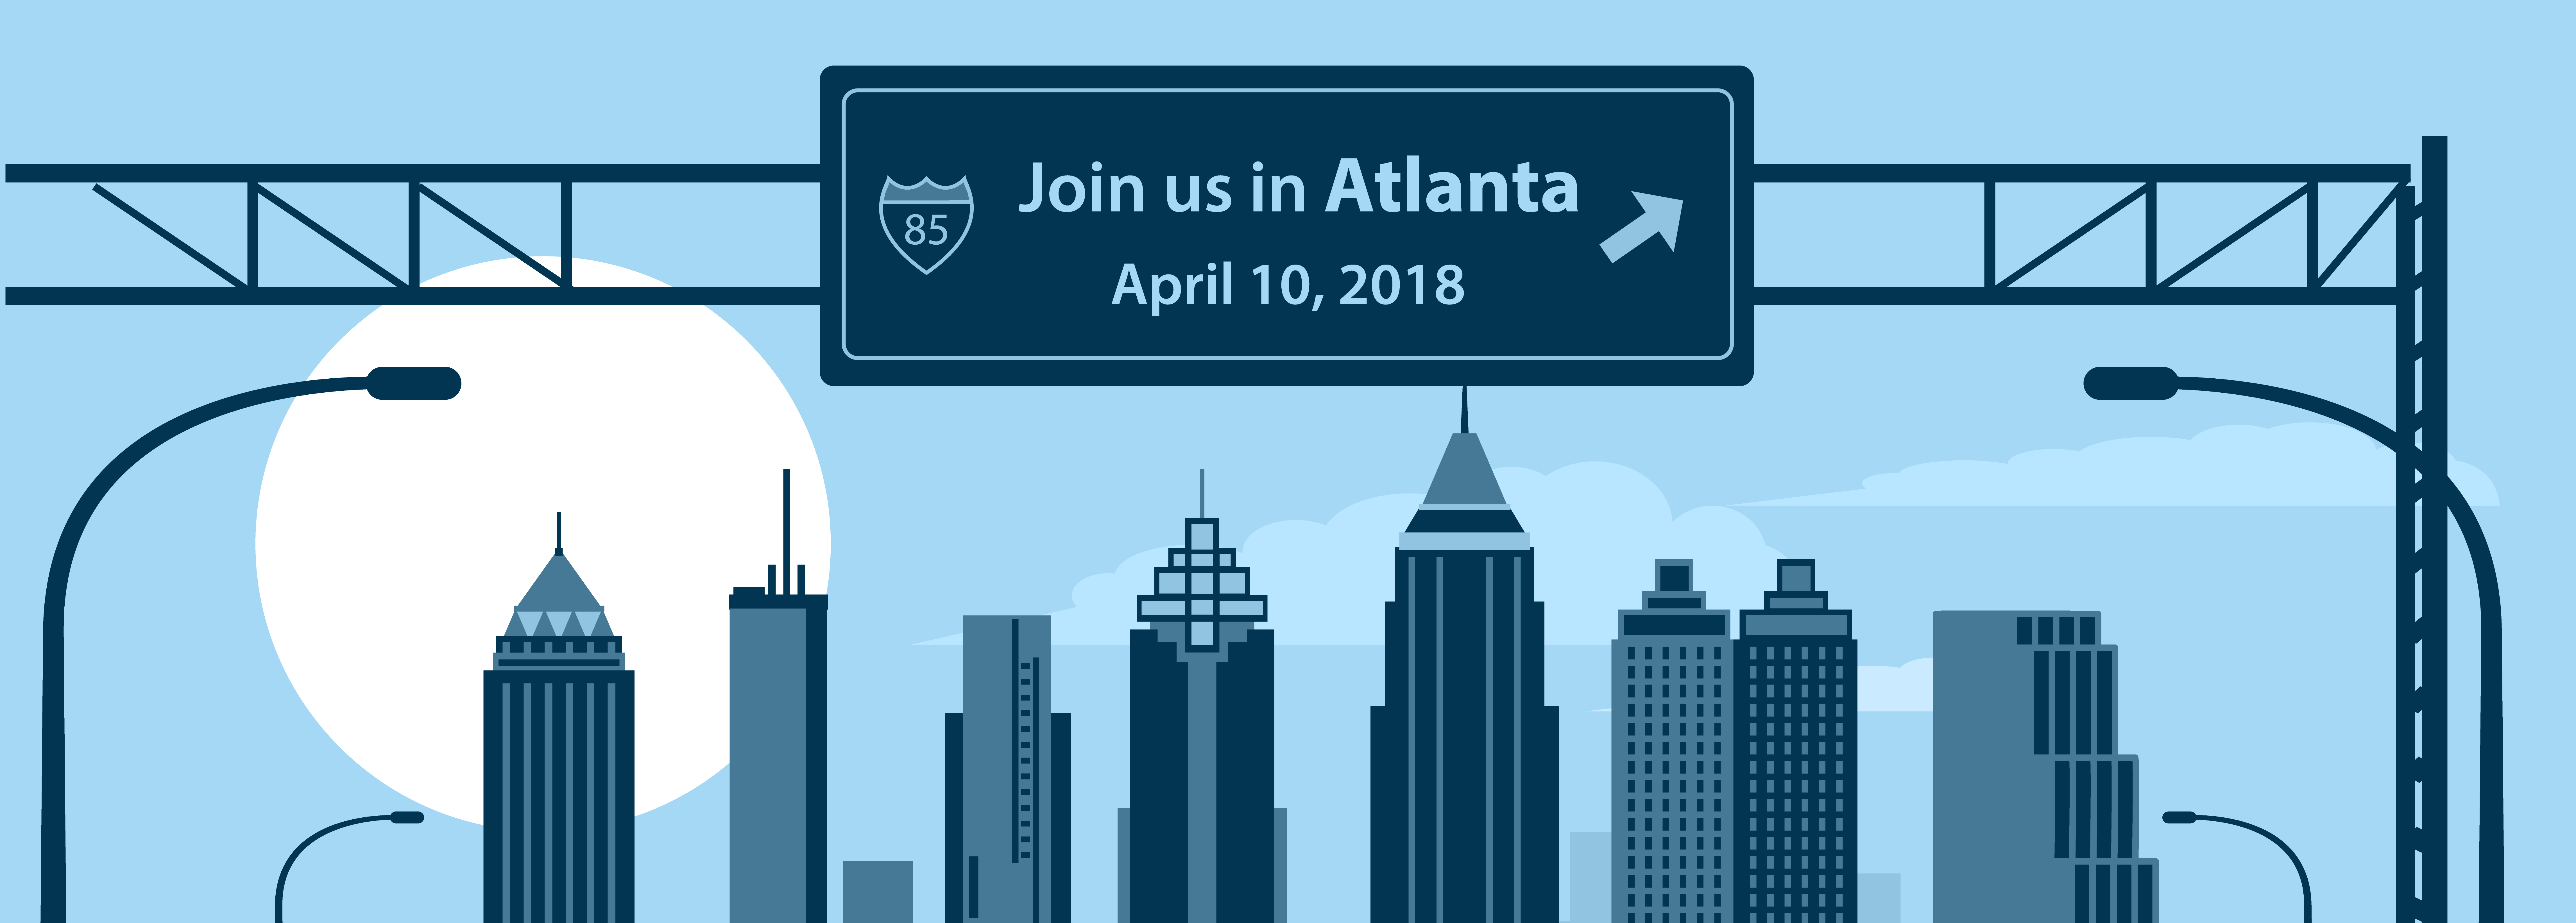 Join Us in Atlanta graphic